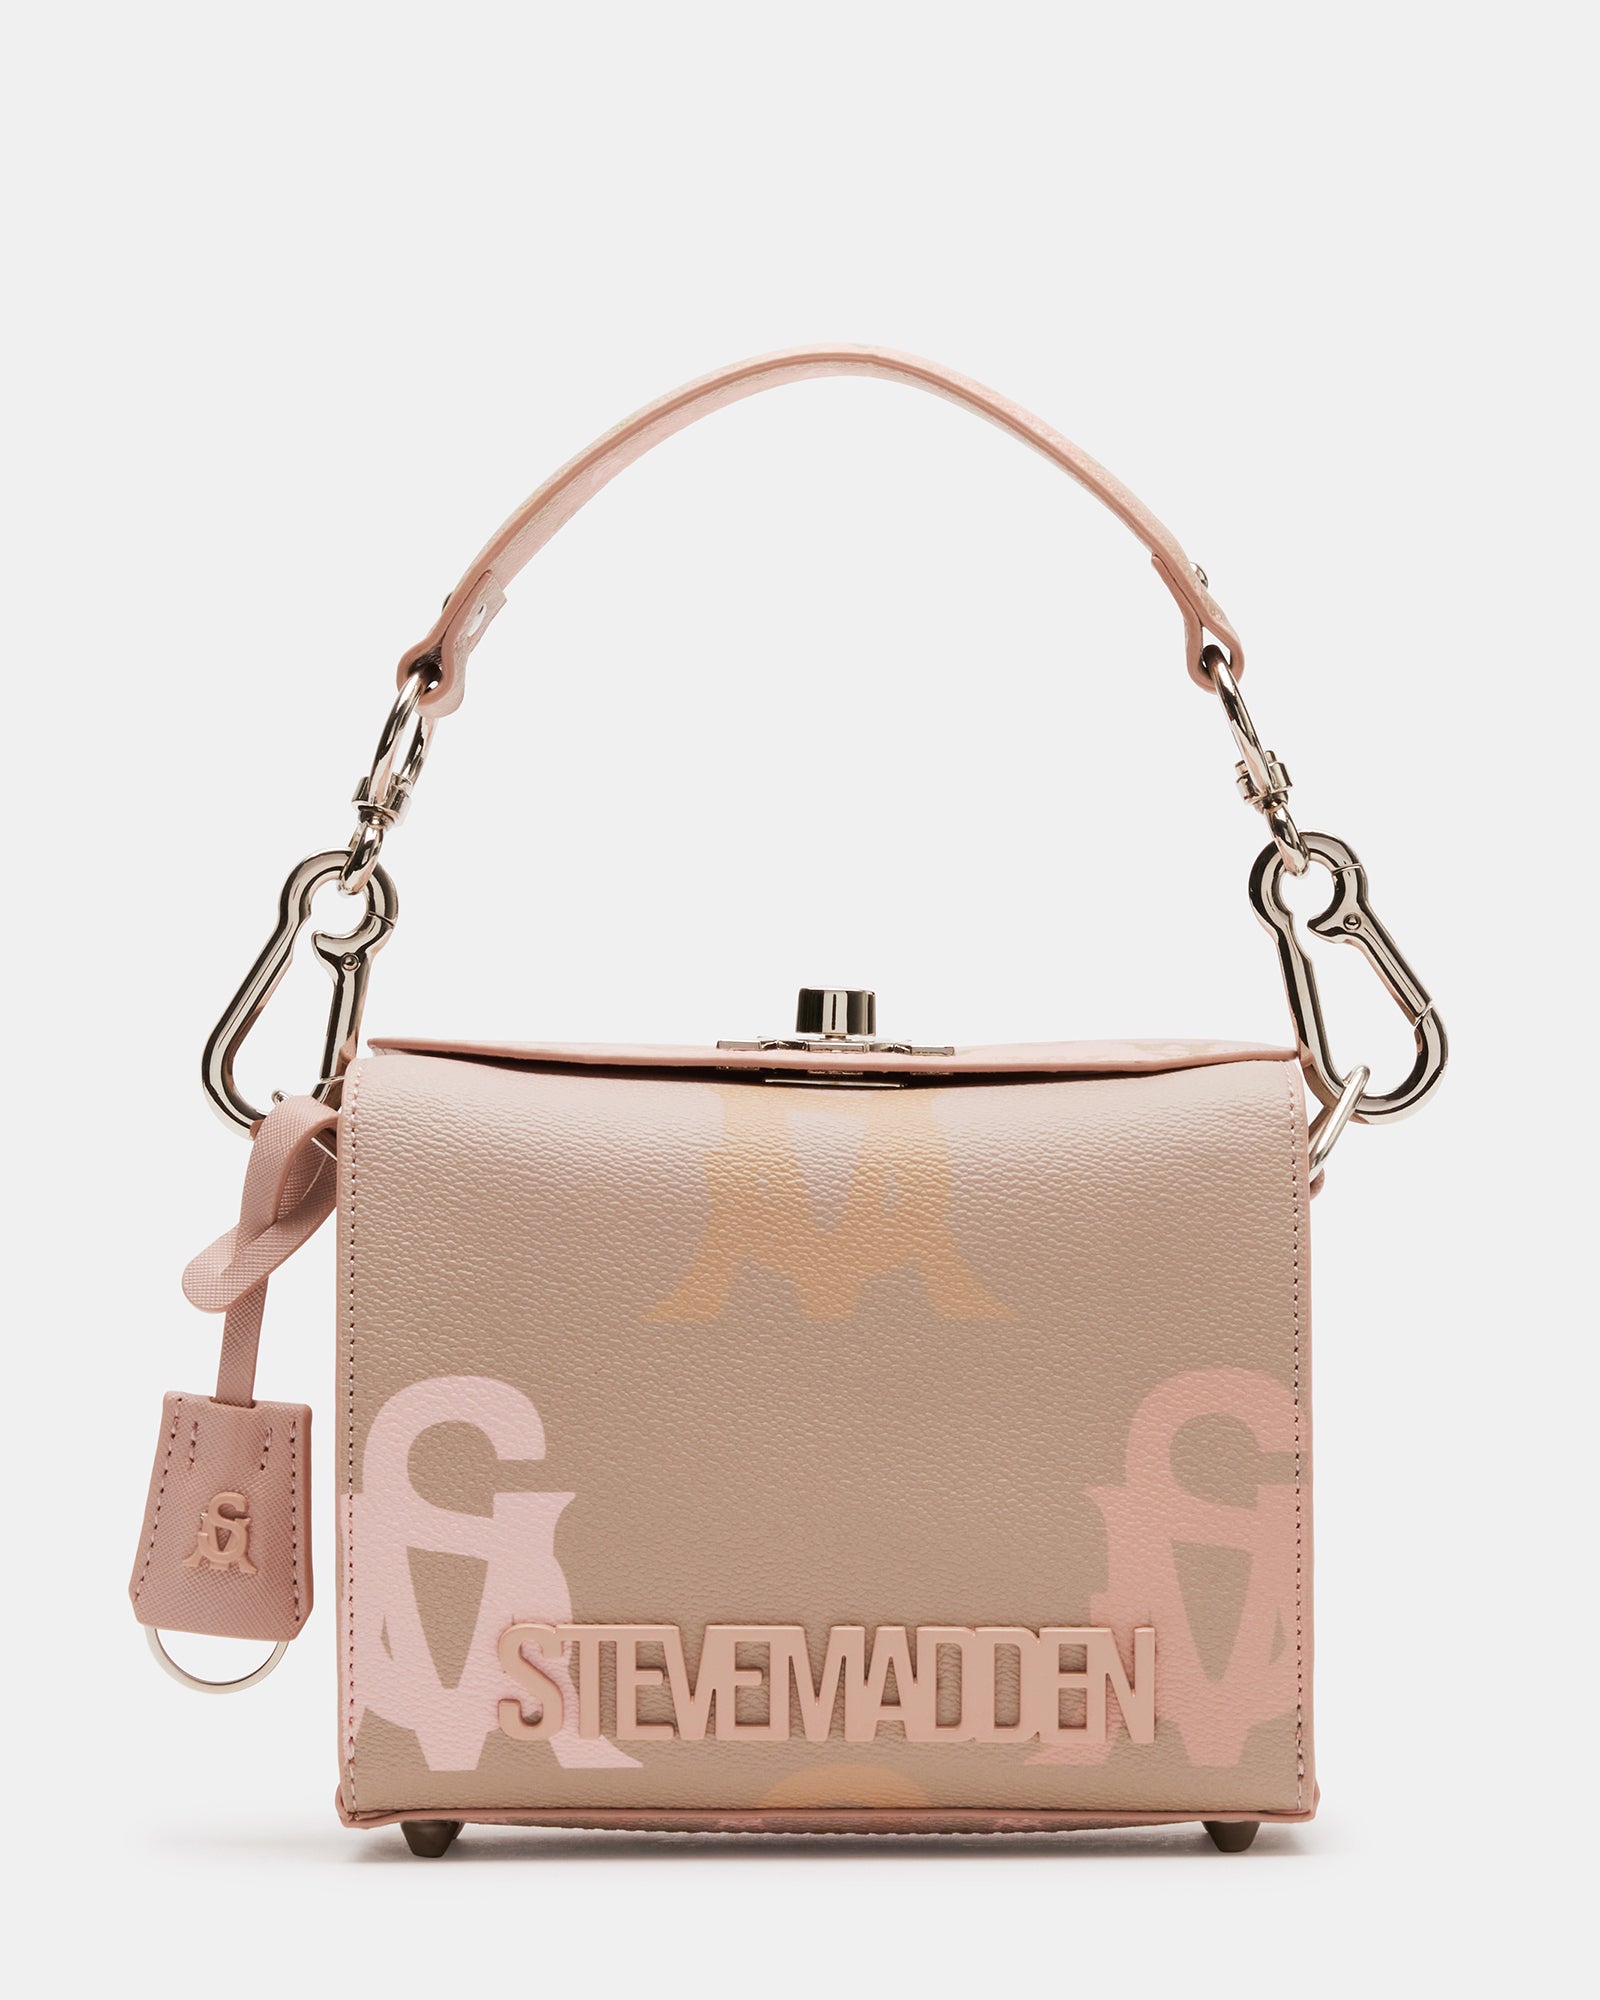 Steve Madden Handbags Pink